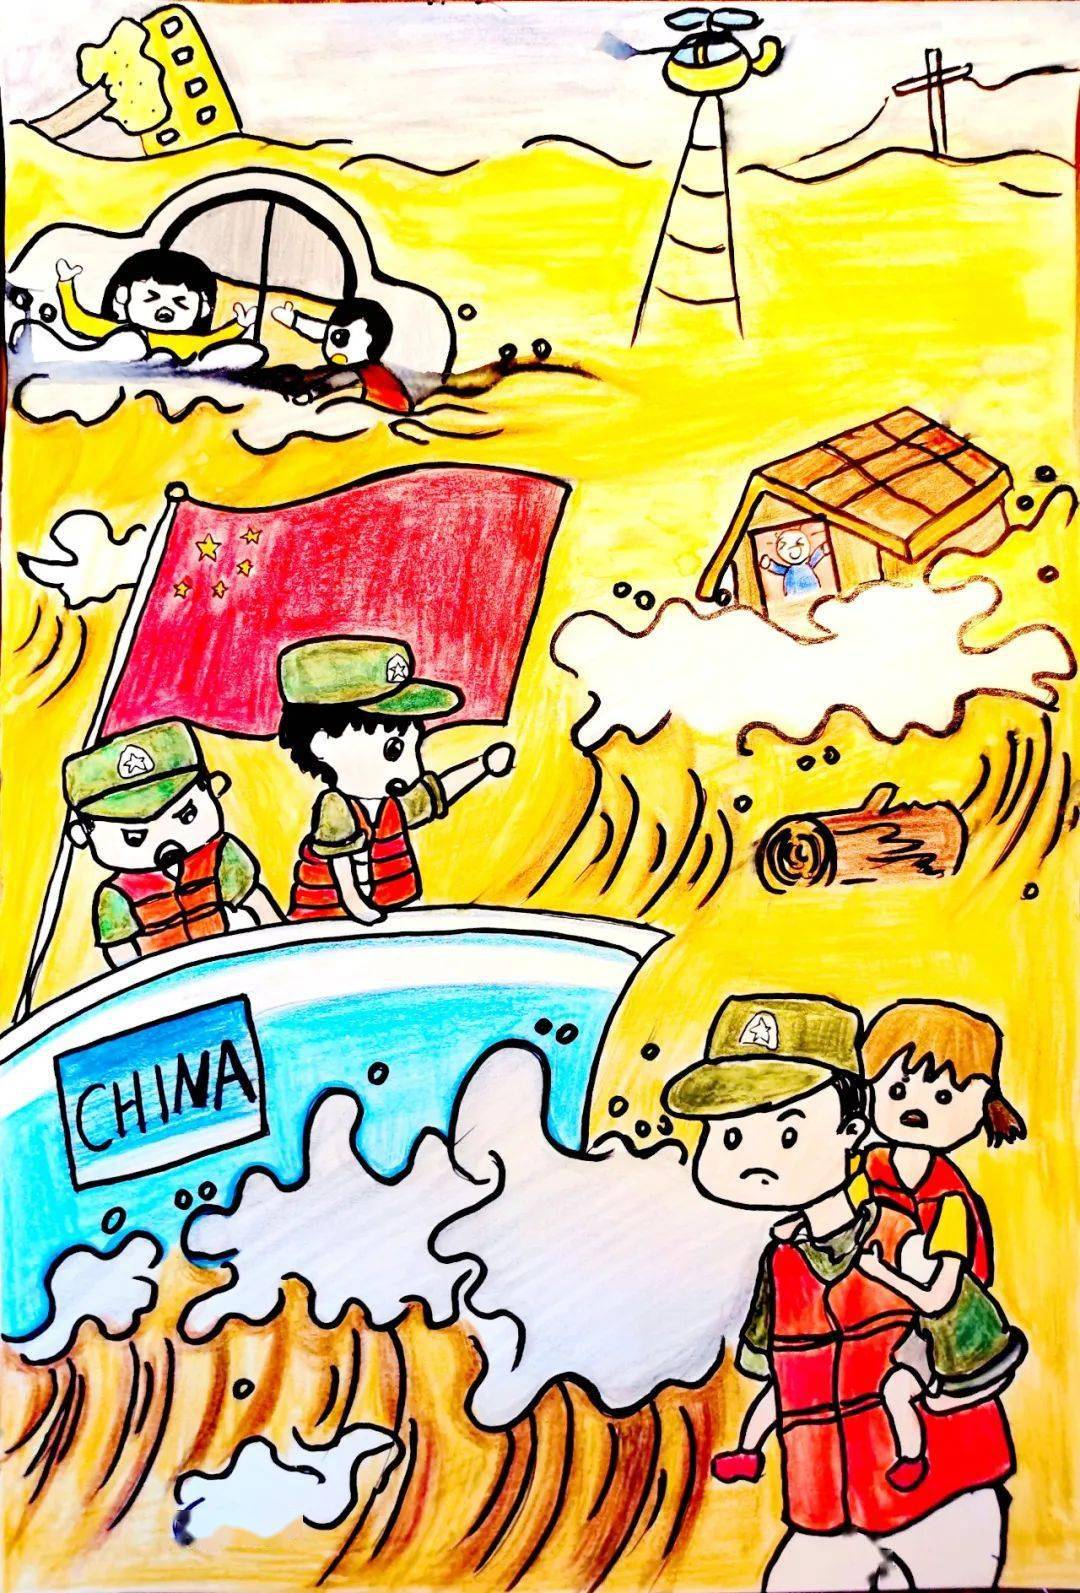 侯顺利登封市实验高级中学抗洪之无名英雄72绘画作者:刘秀华 周口市